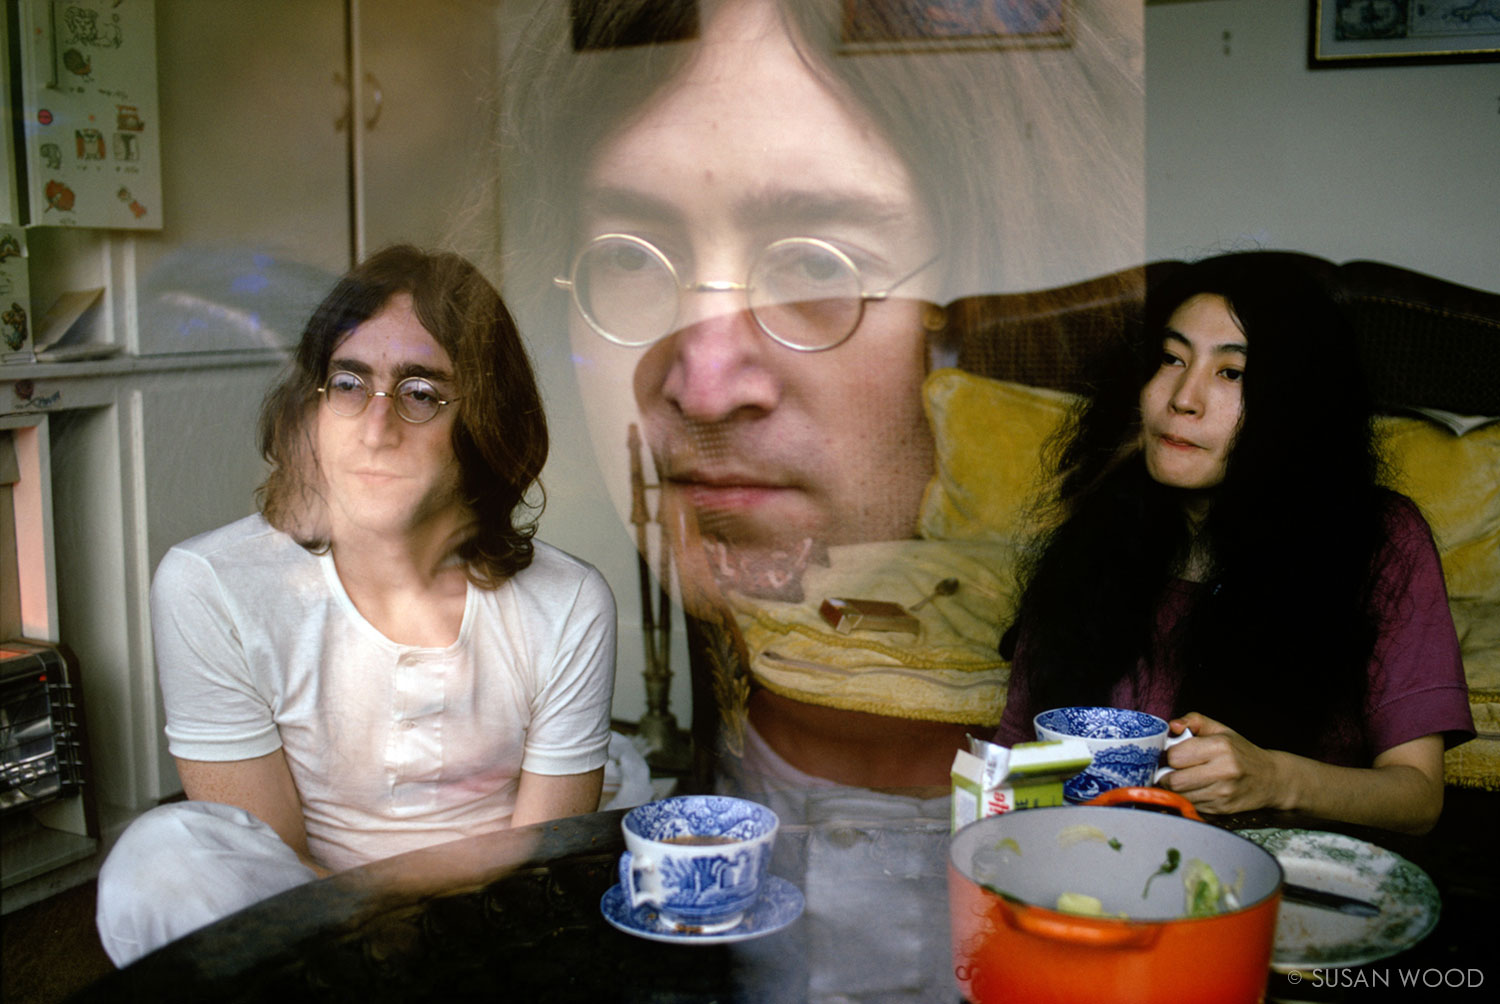 John Lennon & Yoko Ono 1969